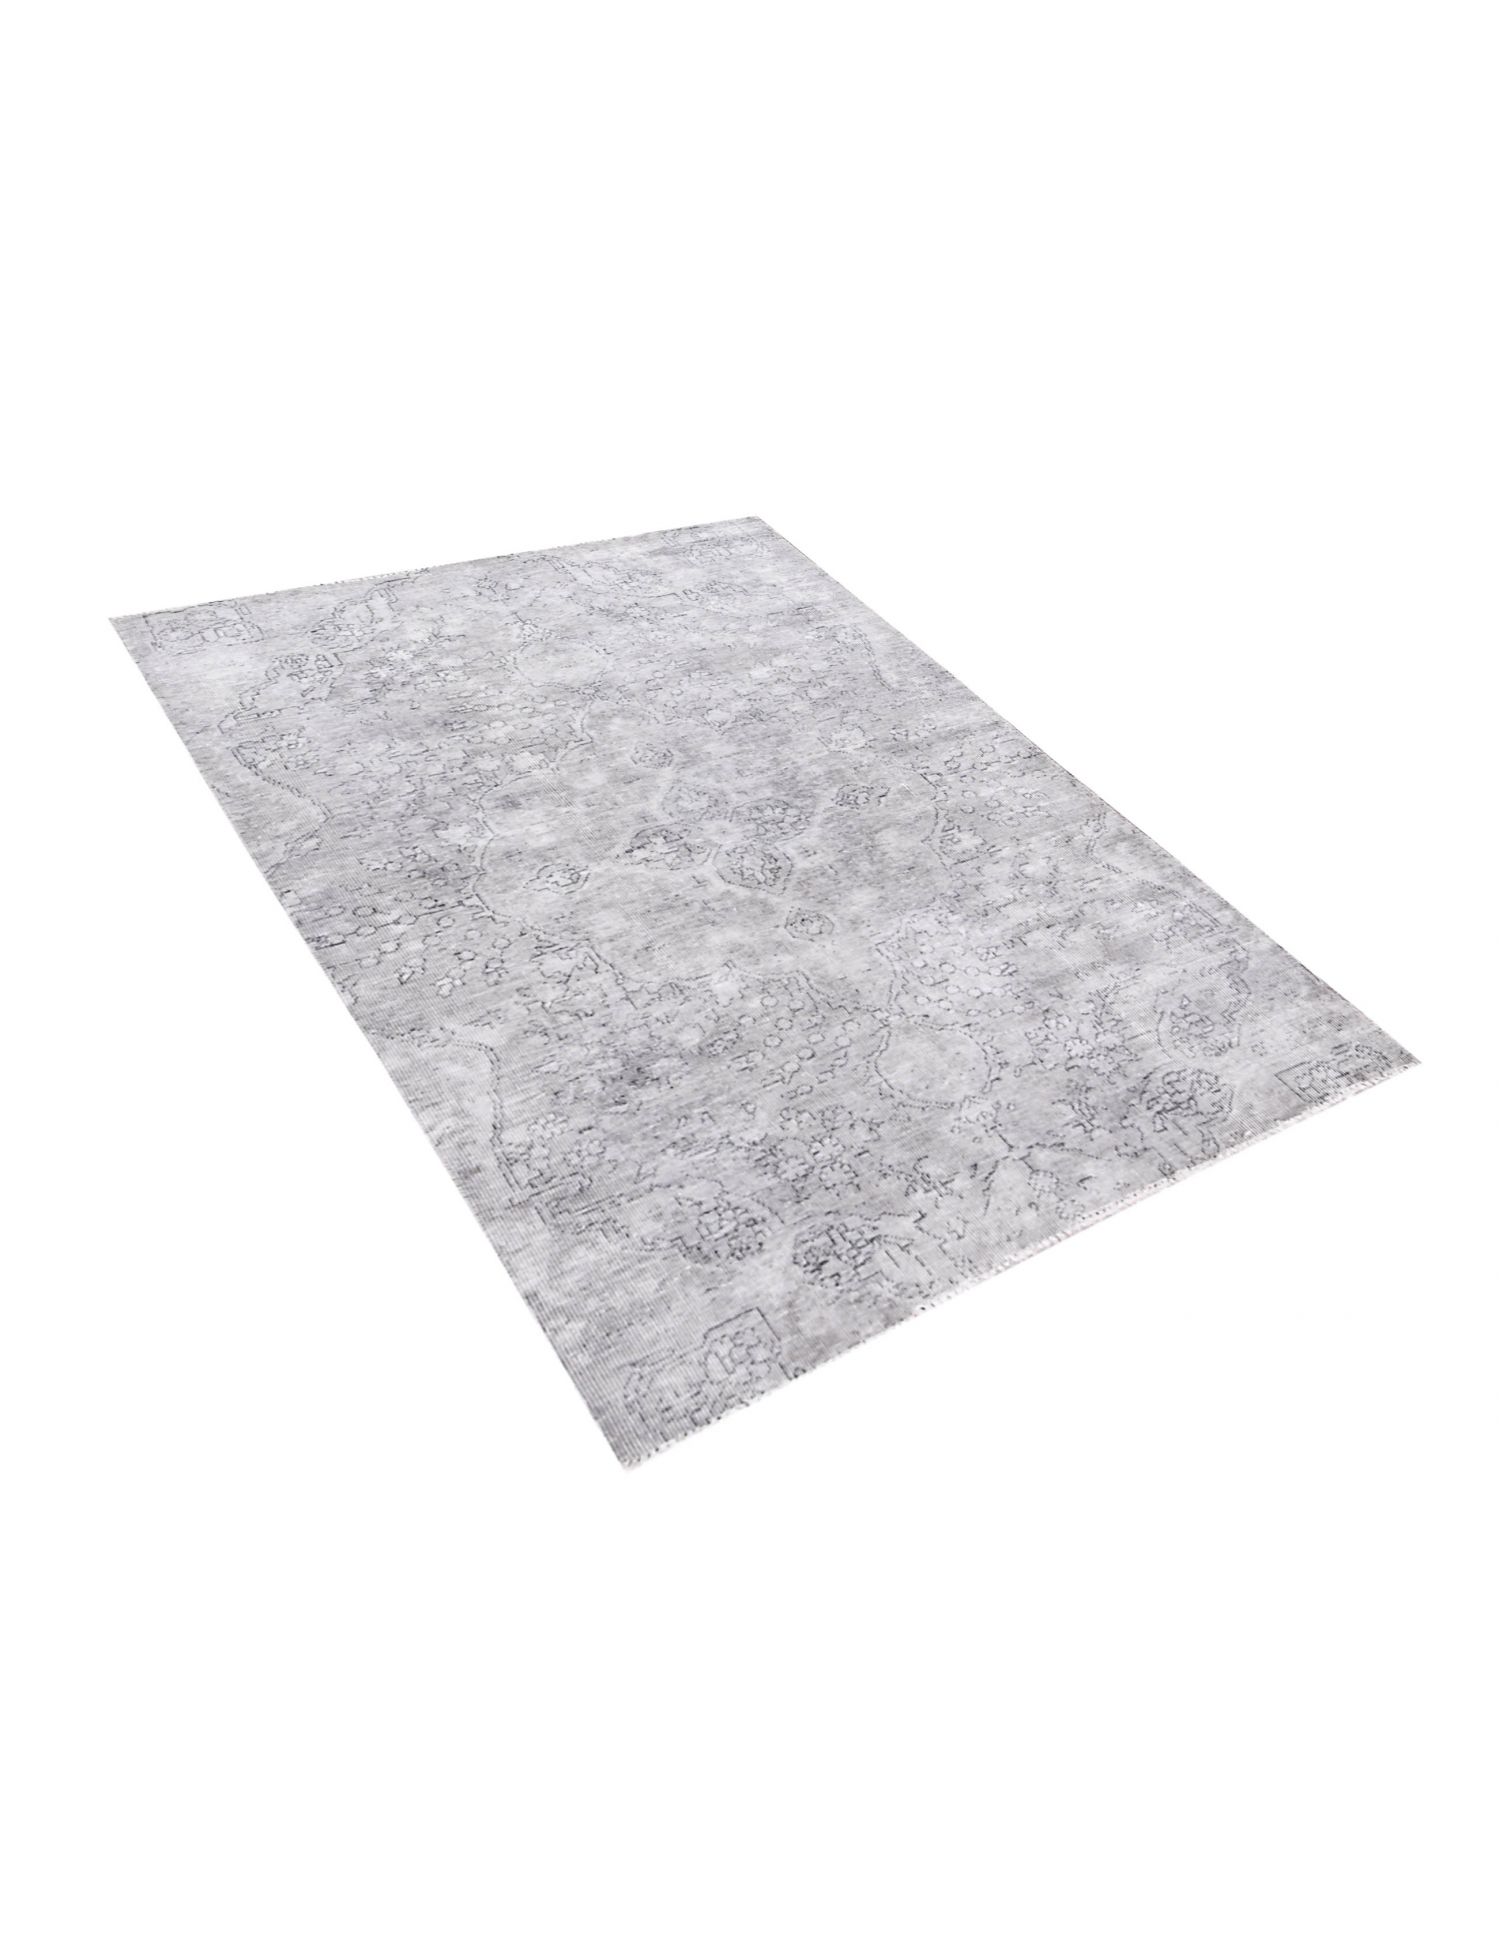 Persischer vintage teppich  grau <br/>215 x 125 cm